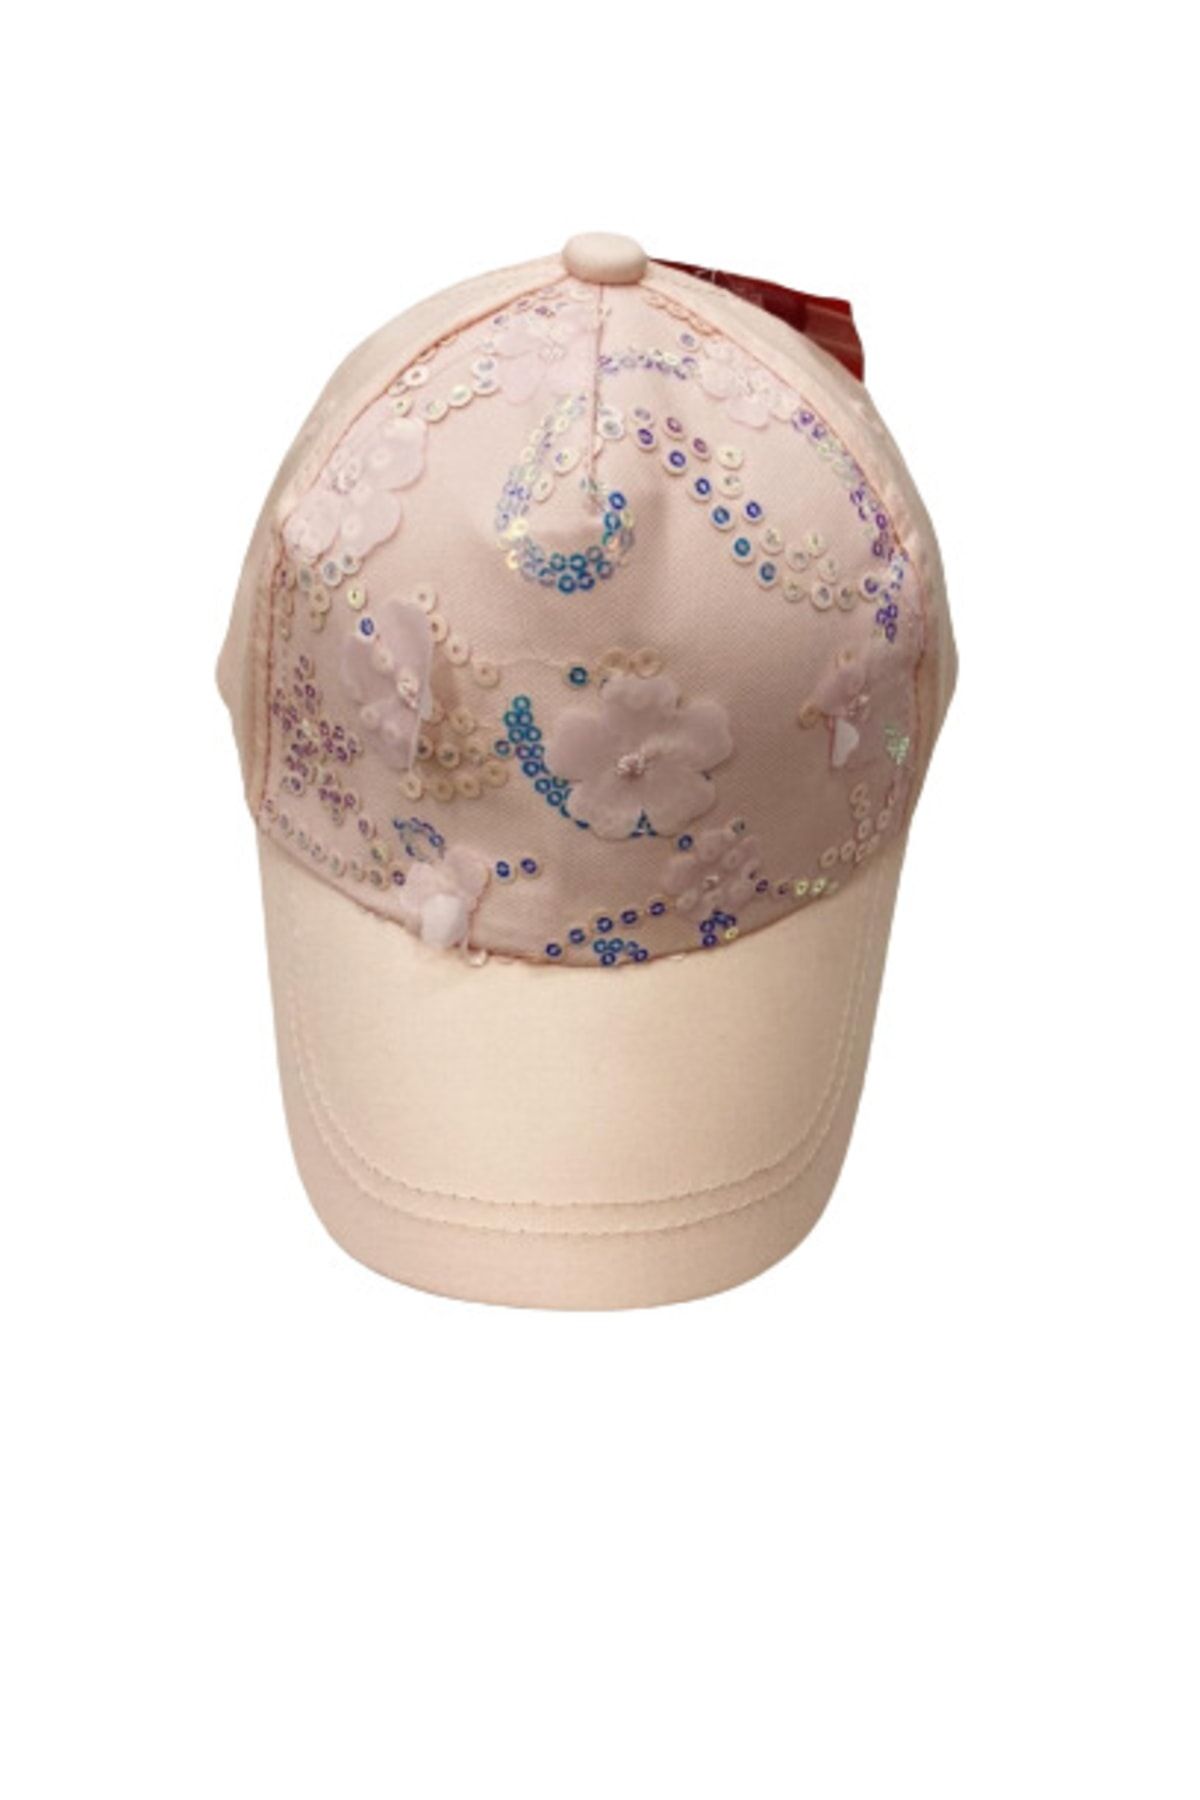 Kitti Kız Bebek Kasket Şapka 3 Boyutlu Çiçekli 1-3 Yaş Baş Çevresi 48-50 Cm